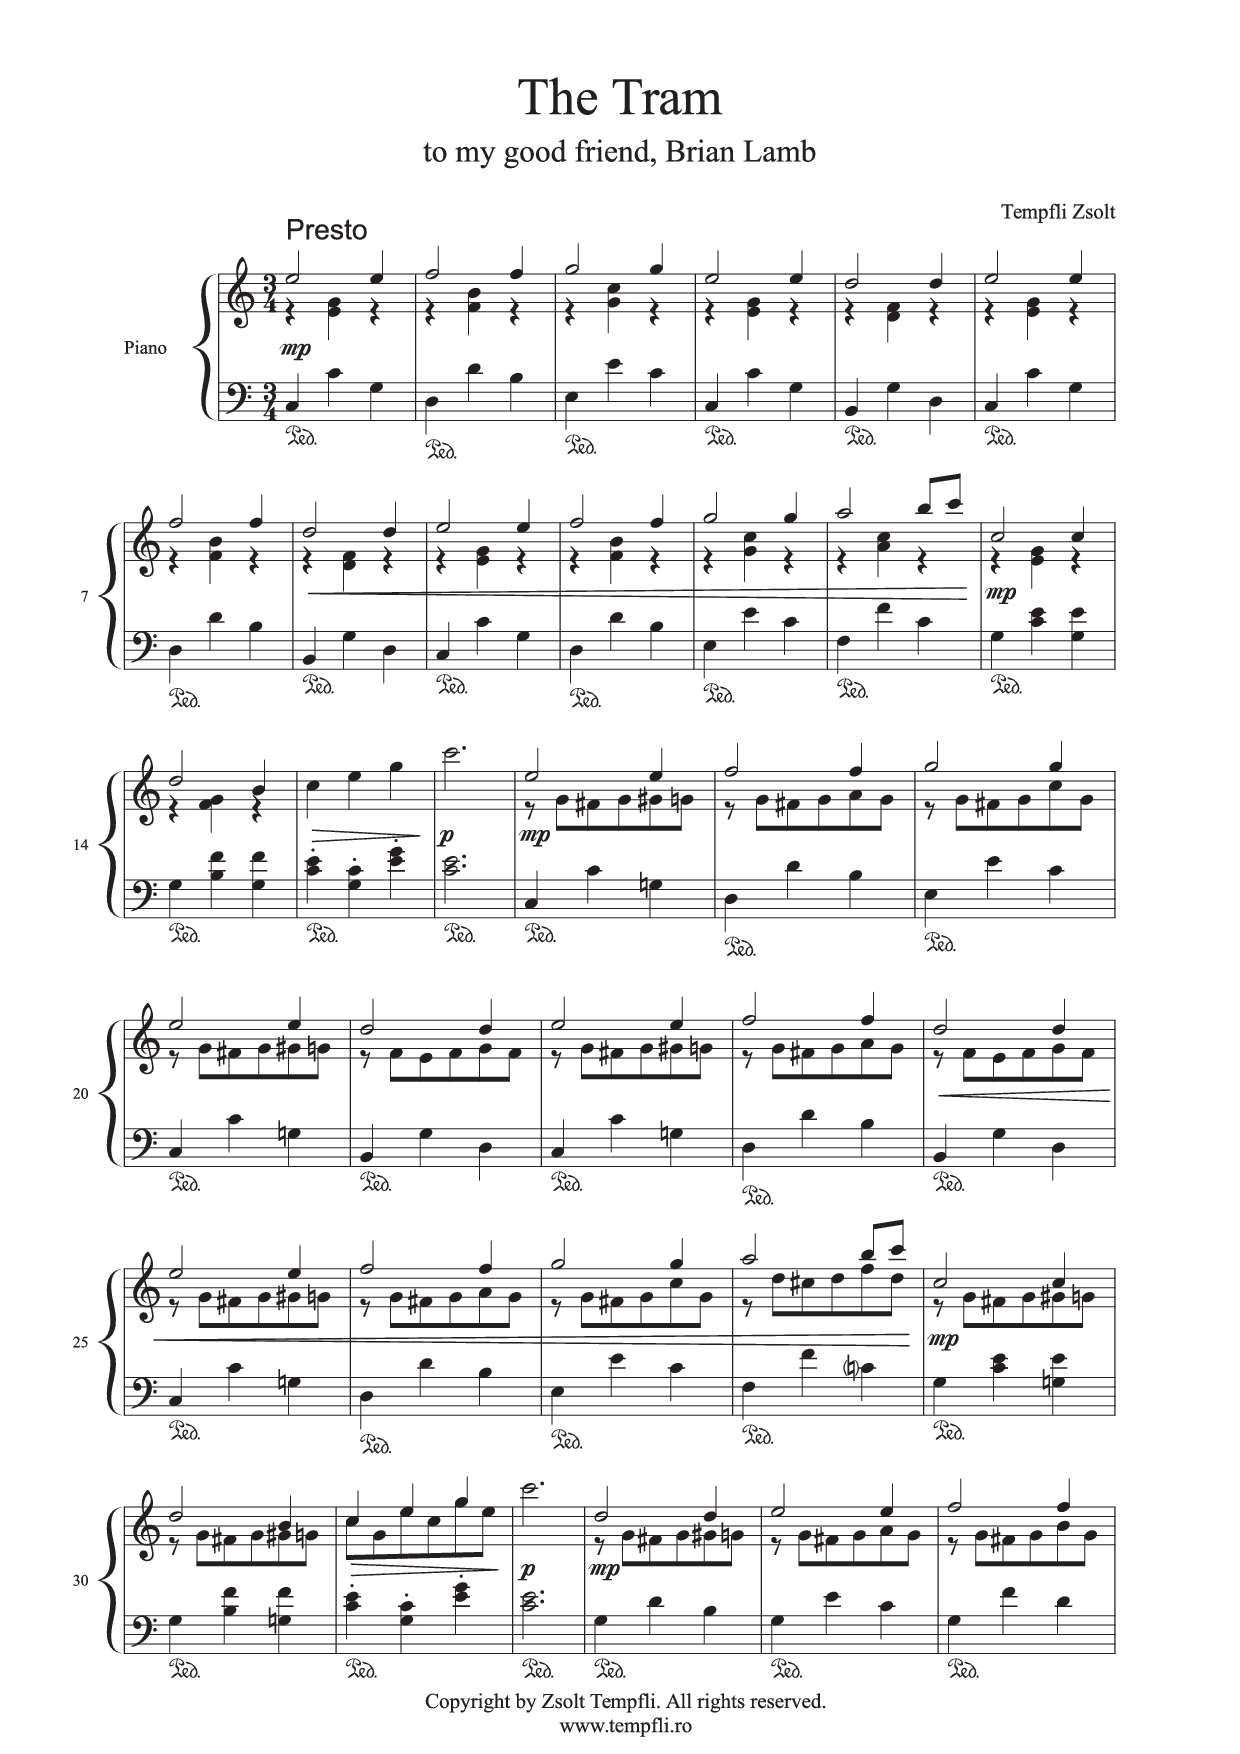 Tempfli Zsolt: A villamos (op. 18) zongorára